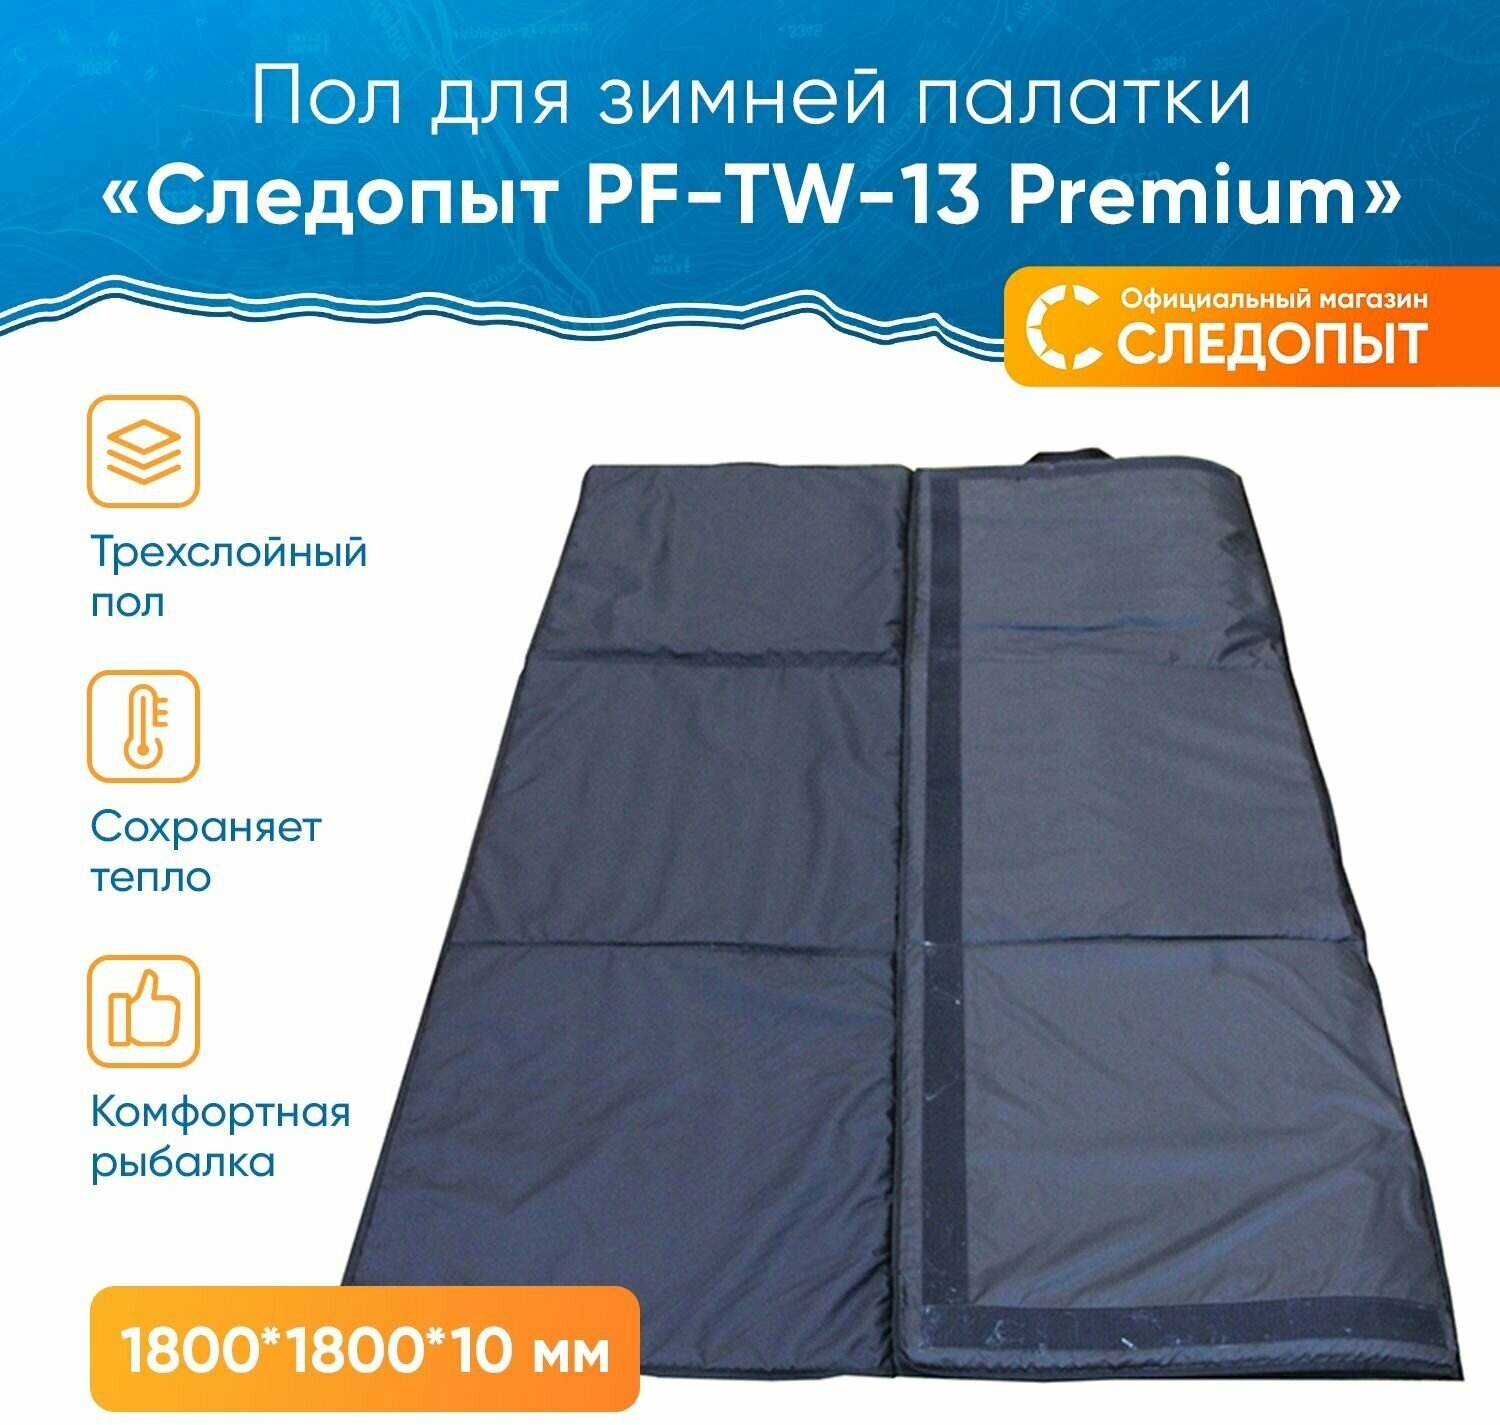 Пол для зимней палатки PF-TW-13 следопыт "Premium", 180х180х1 см, трехслойный